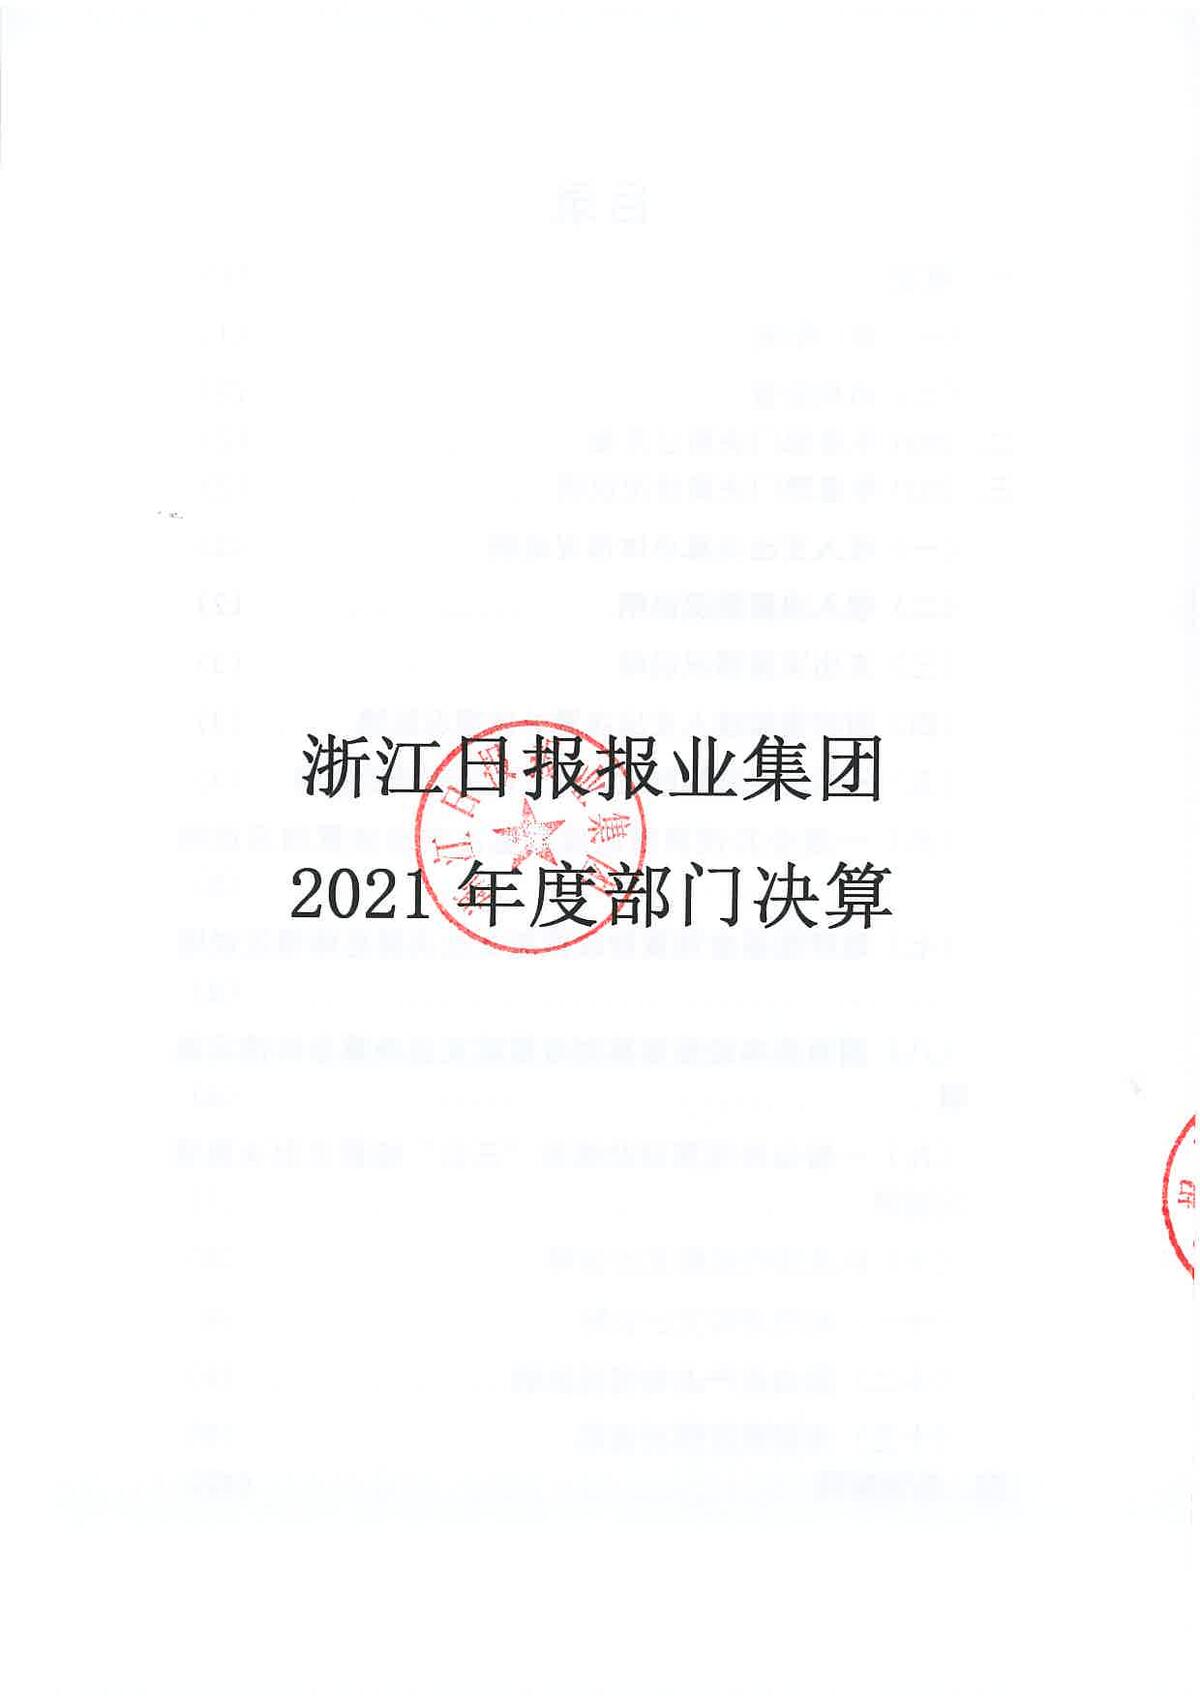 浙江日报报业集团2021年度部门决算_页面_01.jpg